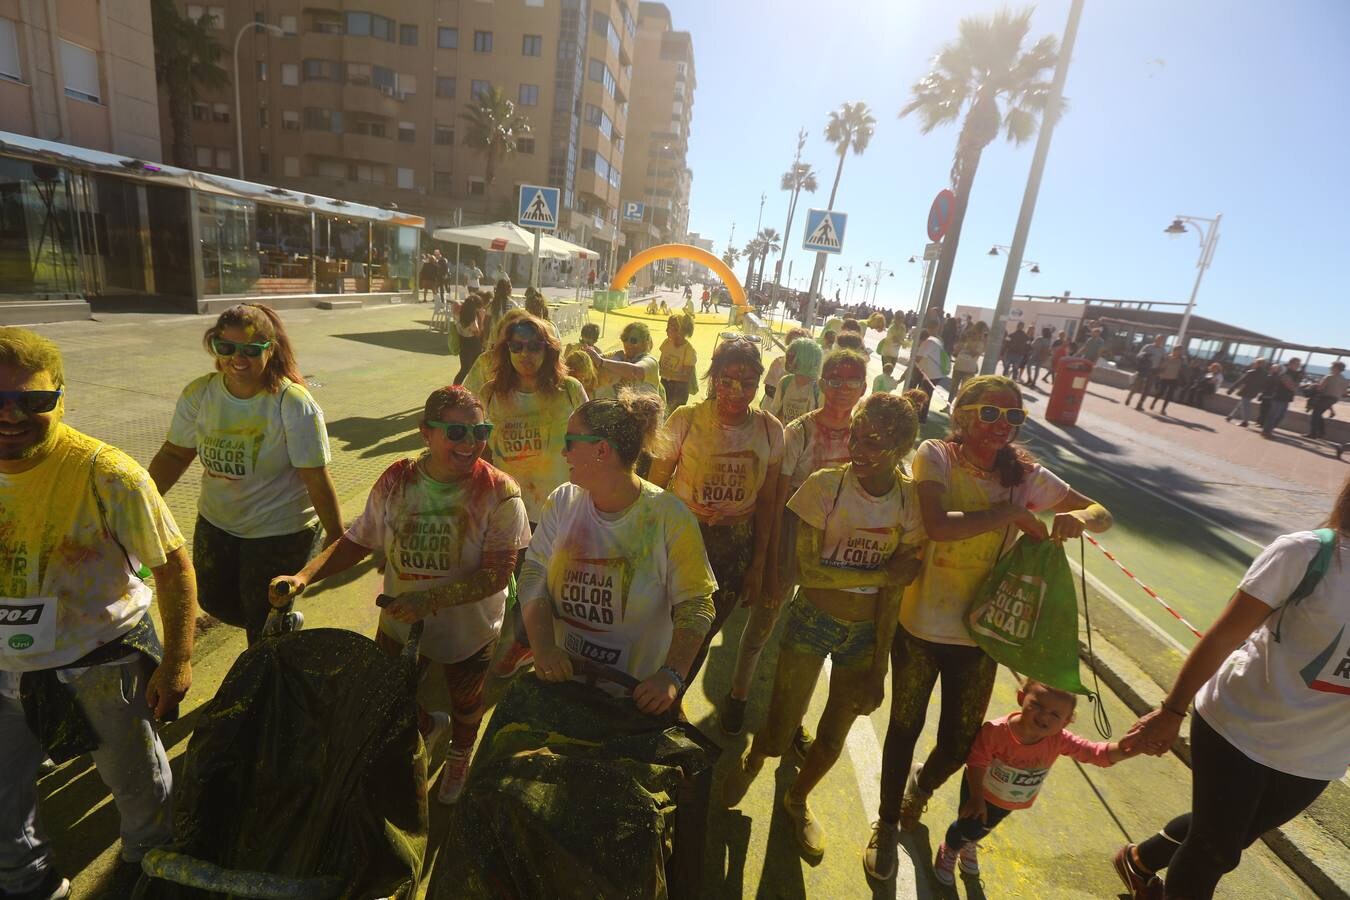 Búscate en la carrera solidaria Unicaja Color Road Cádiz (I)